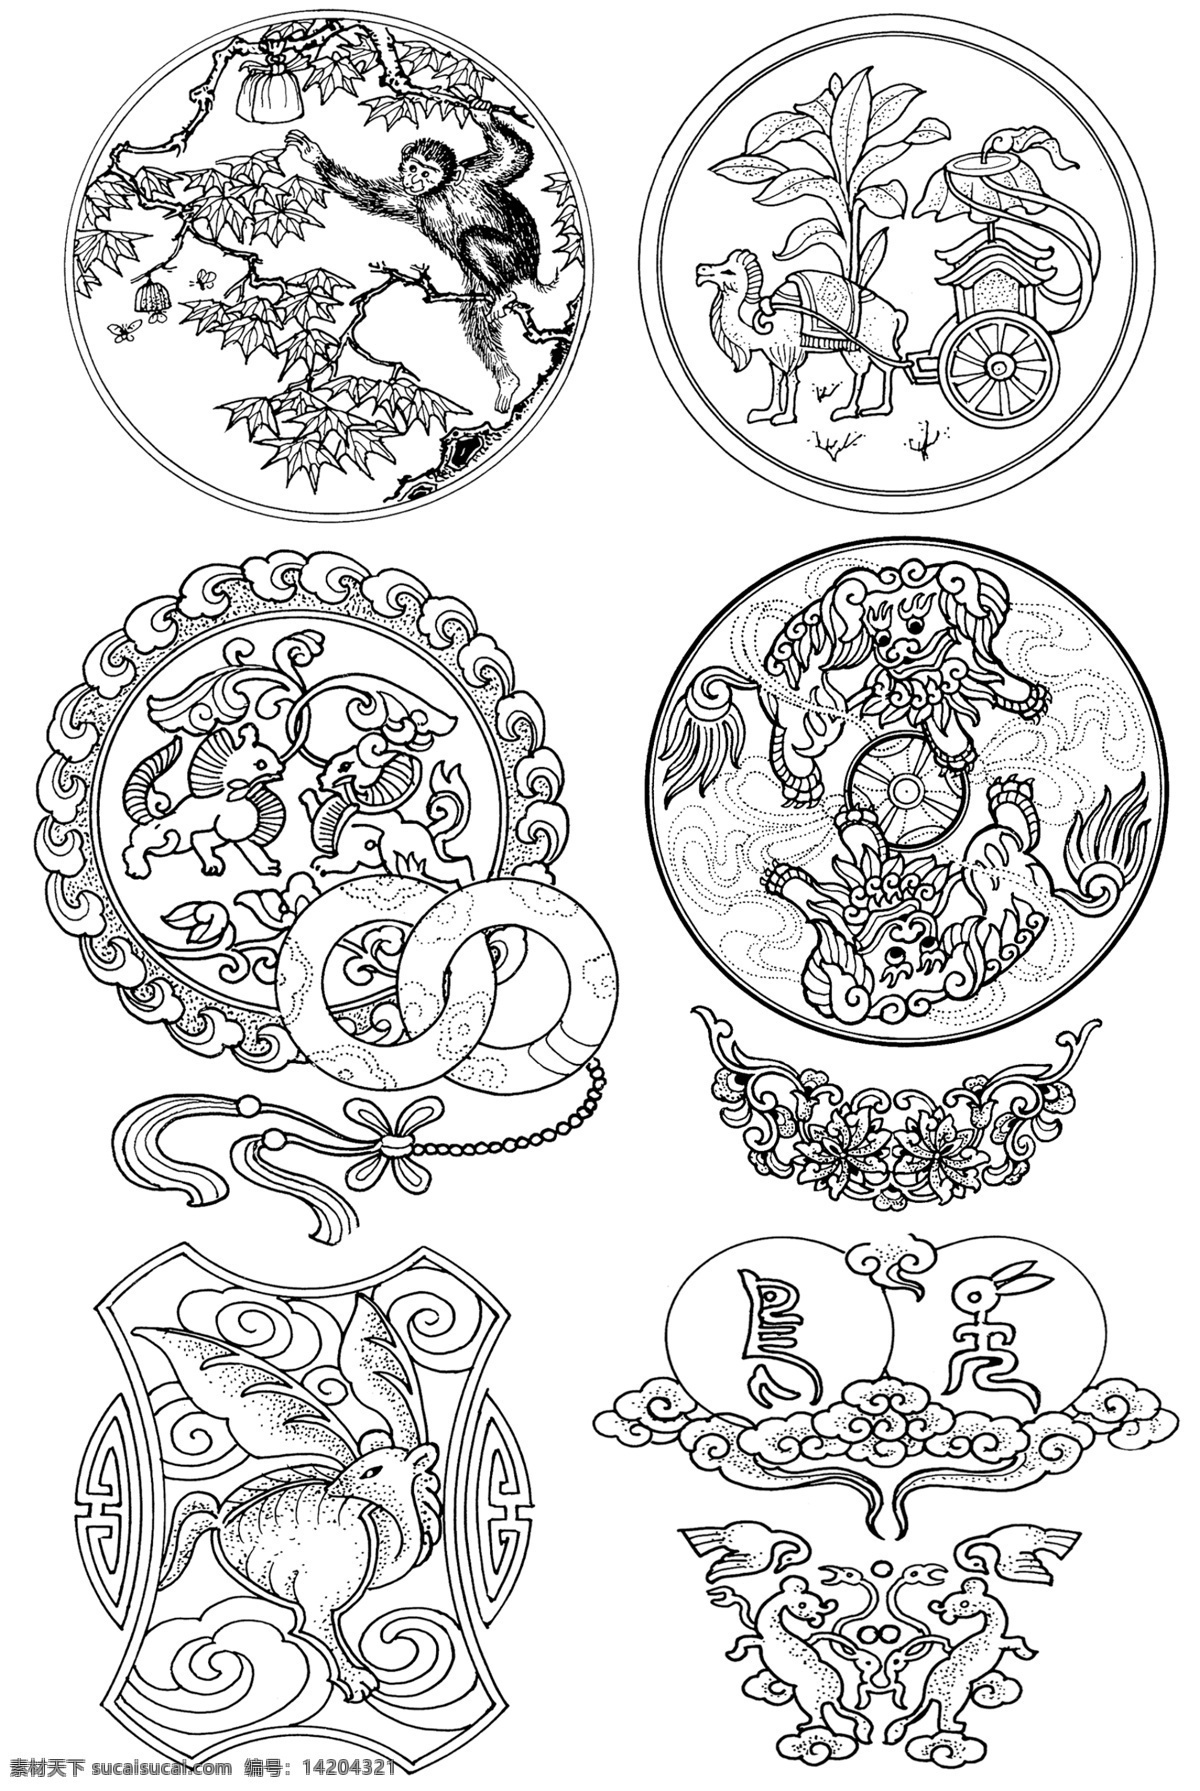 中国吉祥图案 祥瑞图案 猴子 蝙蝠 麒麟 狮子 传统图案 吉祥图案 高清图案 分层 源文件